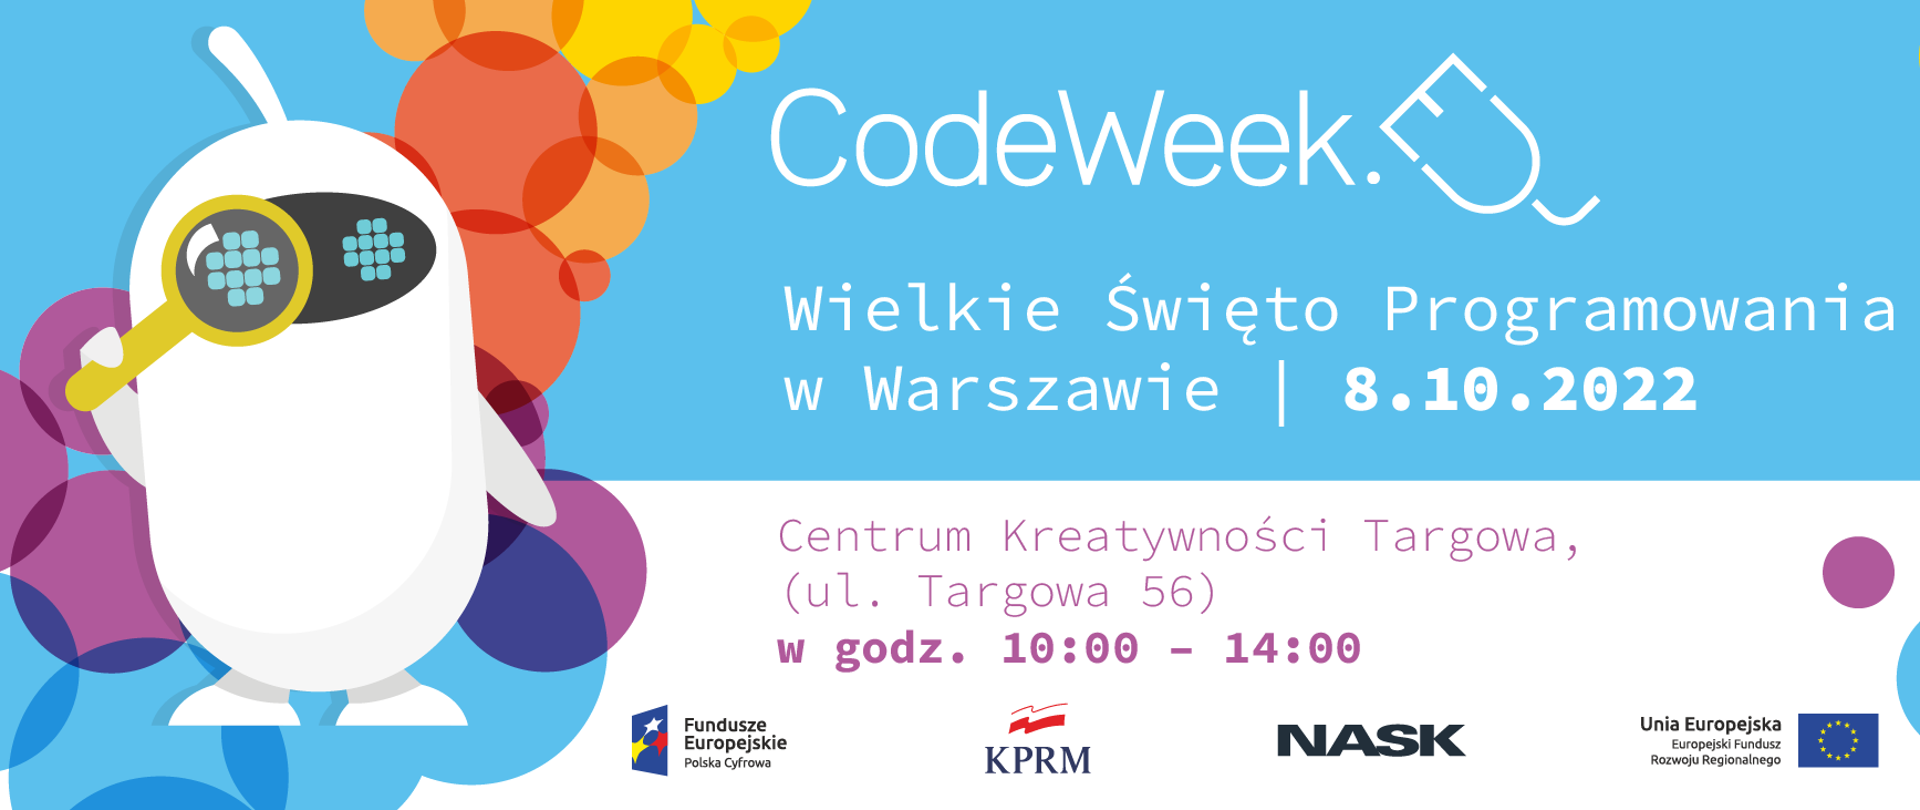 NASK i KPRM zapraszają na inaugurację CodeWeek2022!